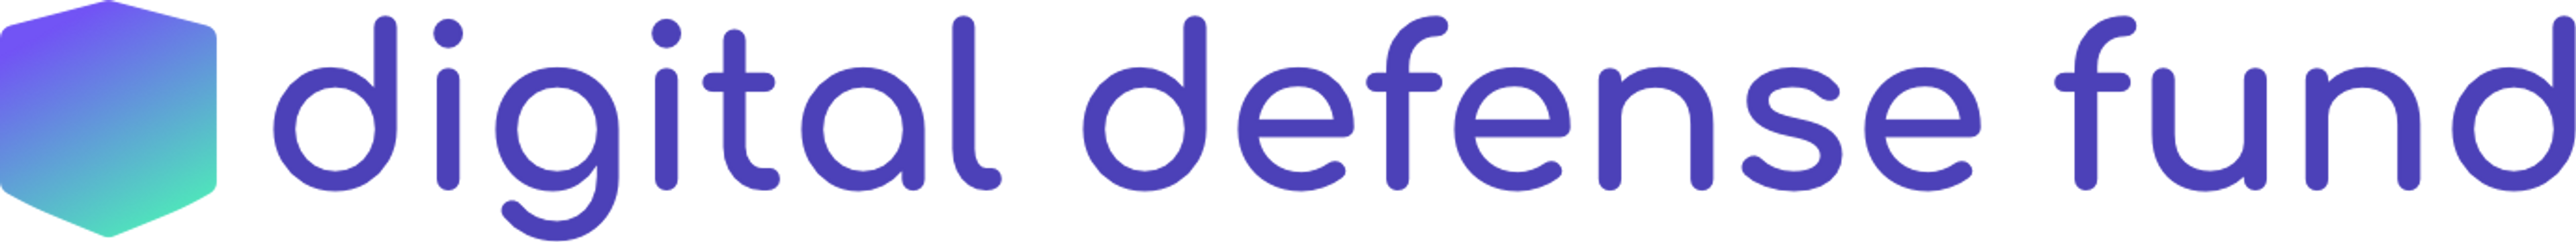 Digital defense fund logo